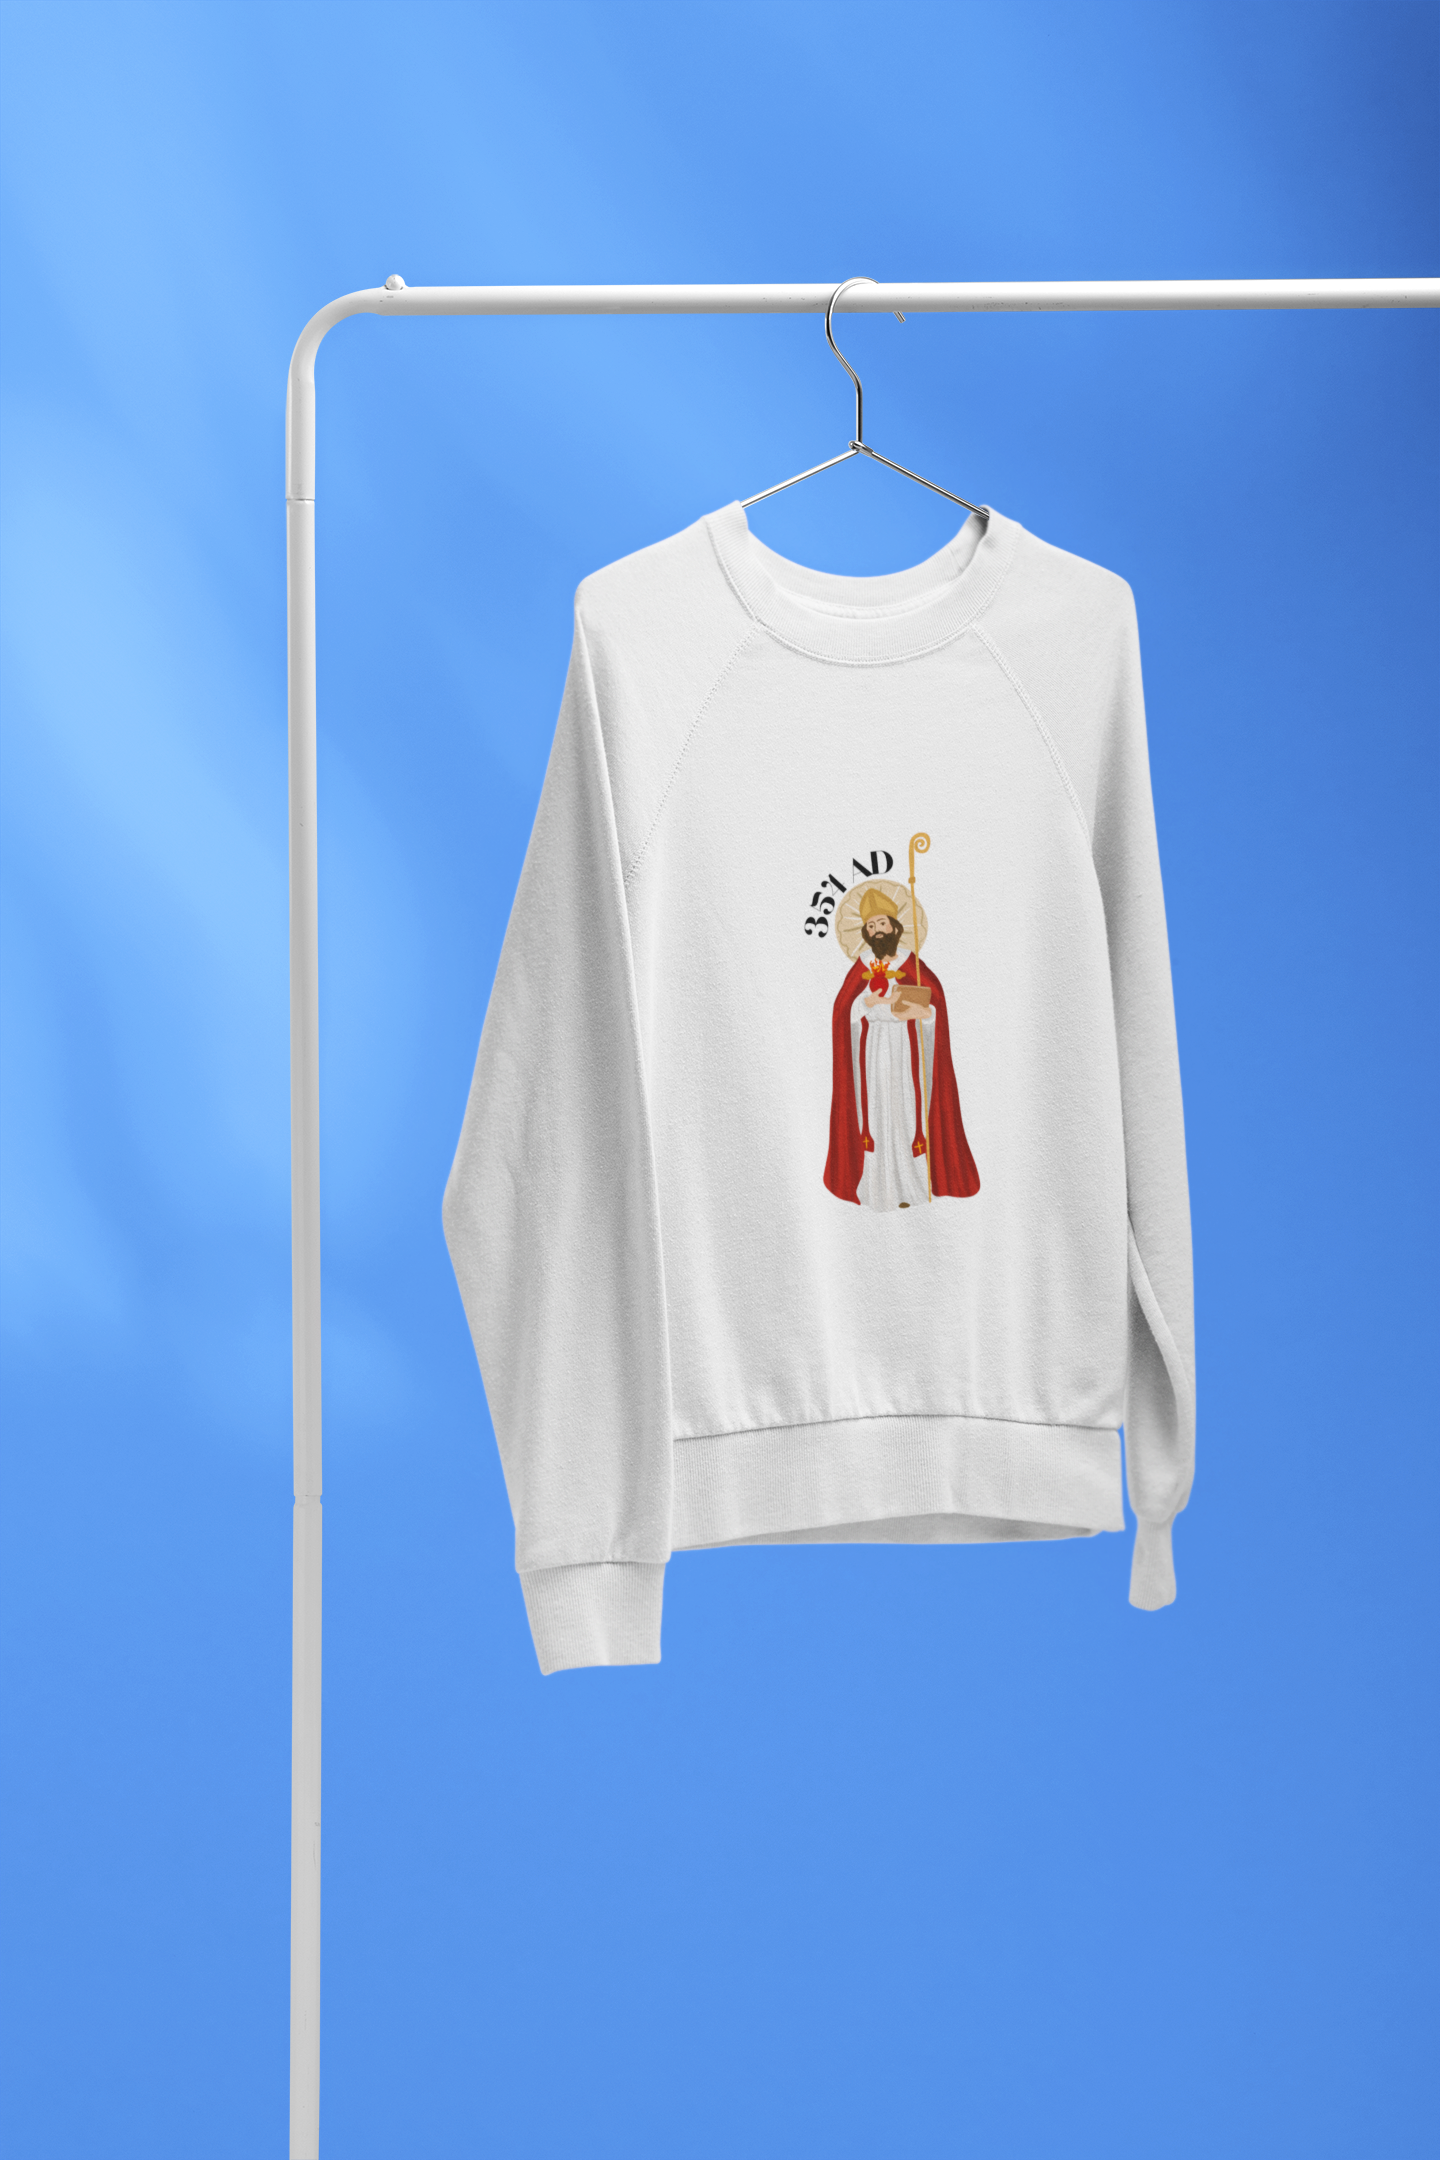 St. Augustine Sweatshirt